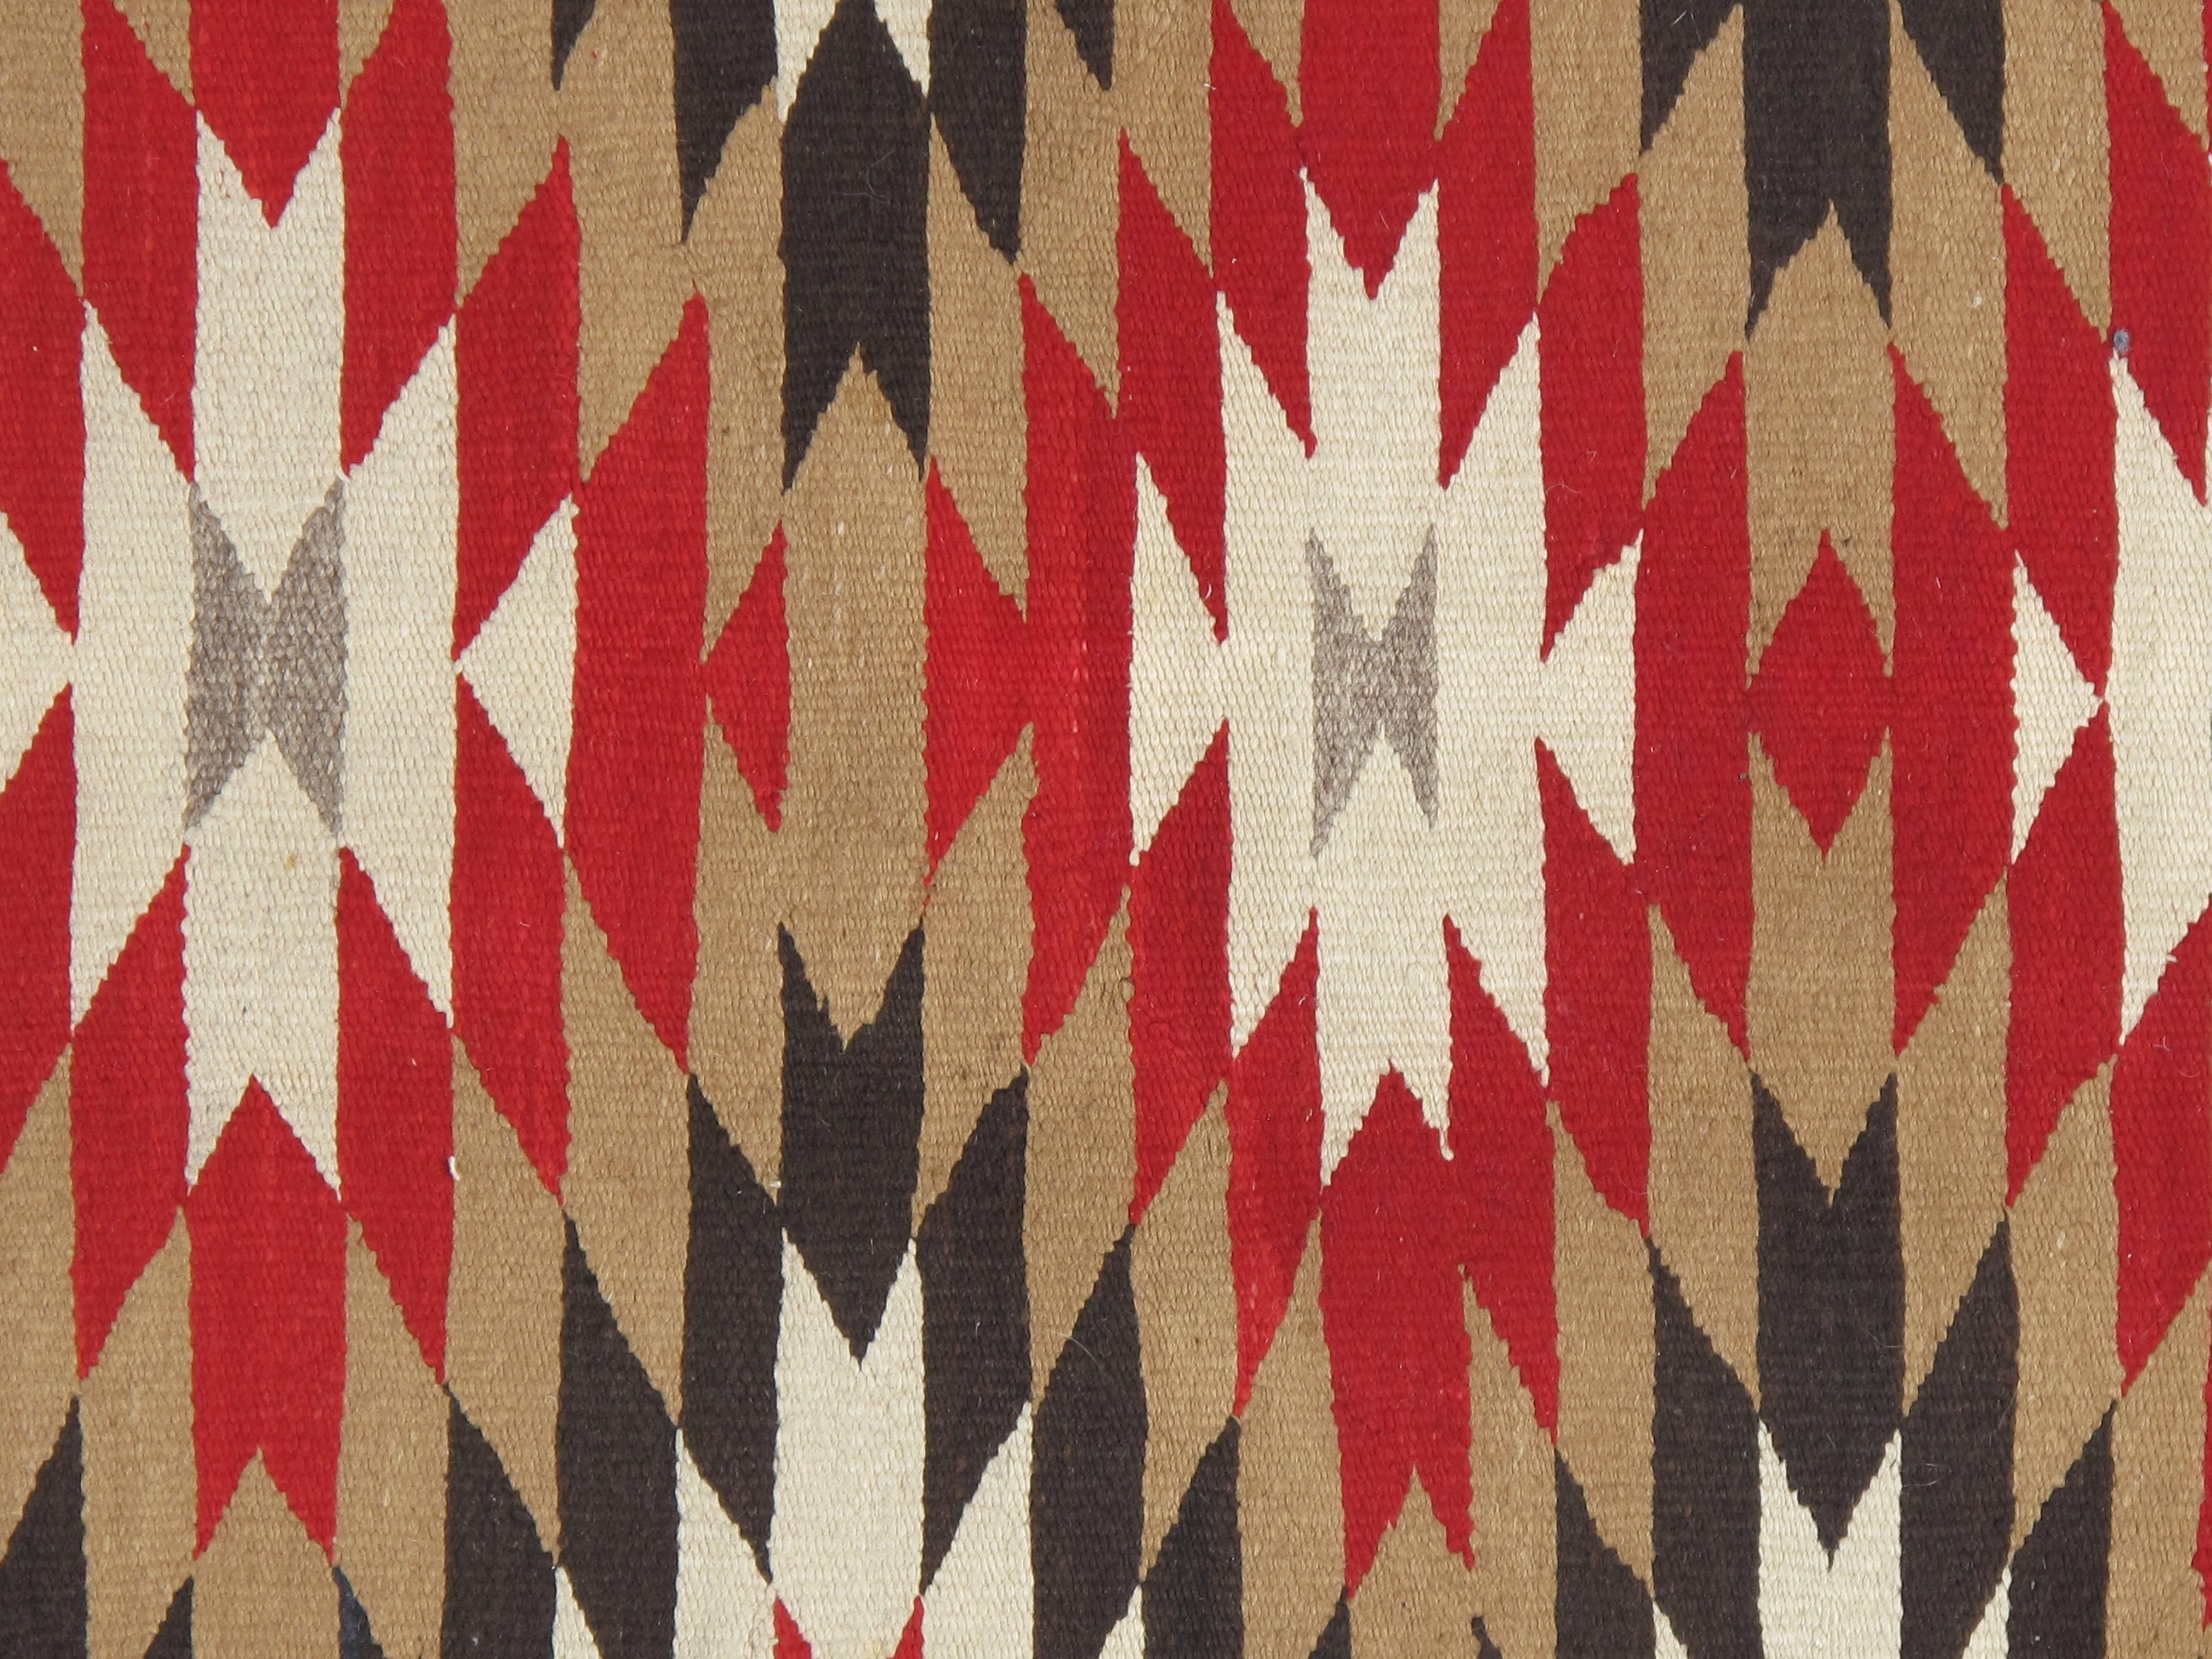 Les tapis et couvertures Navajo sont des textiles produits par le peuple Navajo de la région des quatre coins des États-Unis. Les textiles Navajo sont très appréciés et sont recherchés comme articles de commerce depuis plus de 150 ans. Ces tapis et